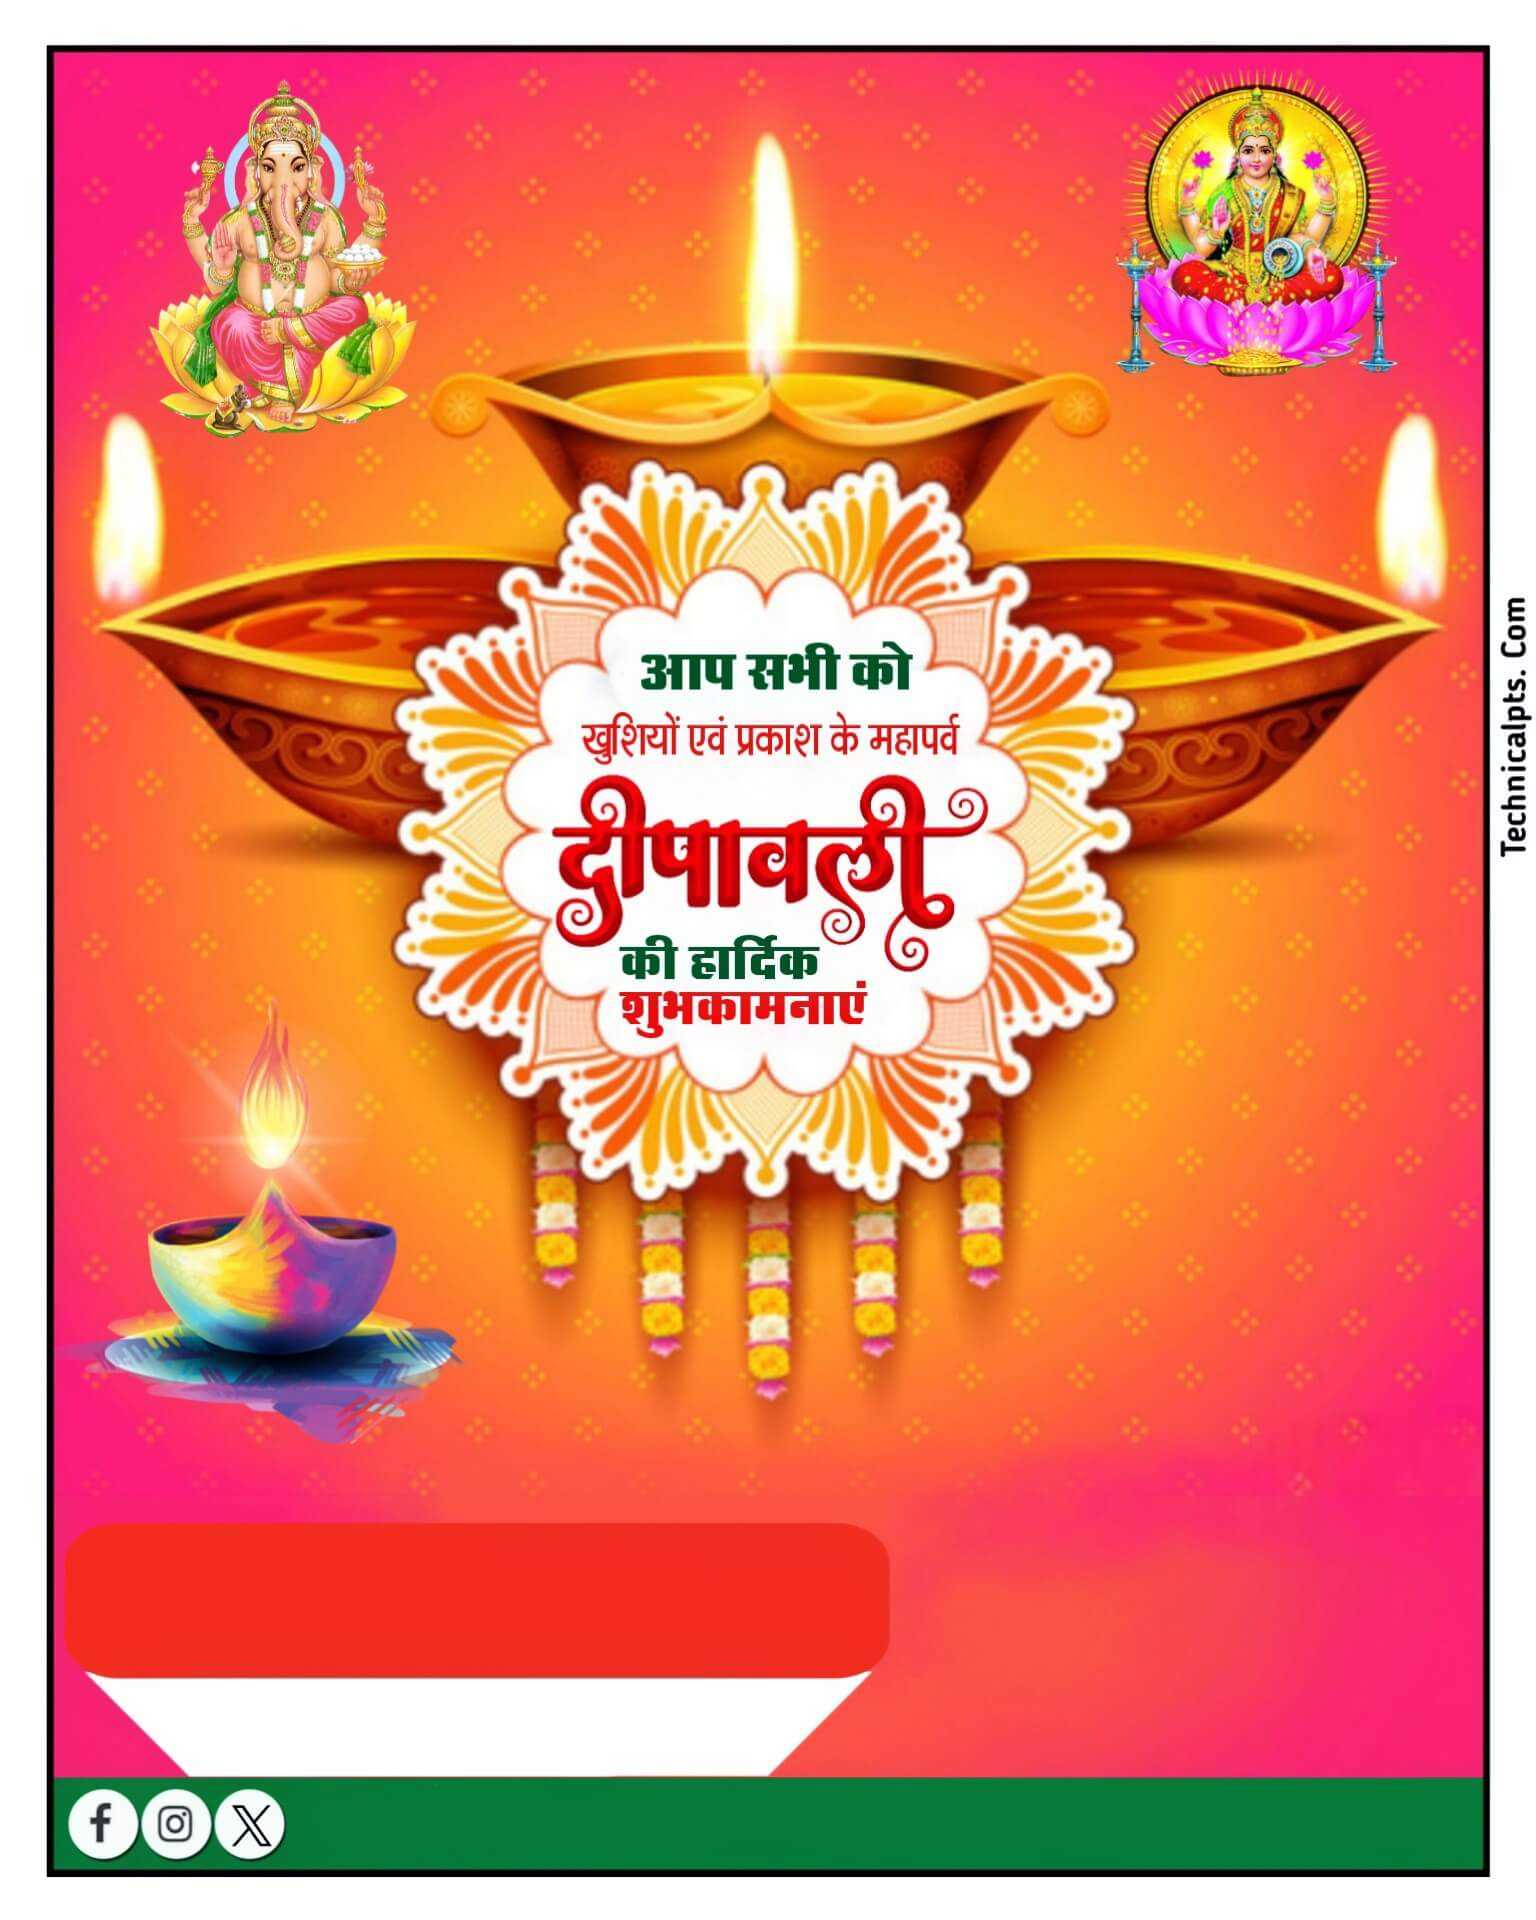 Dipawali poster plp file download| Diwali banner editing Plp file free download| Diwali png images download